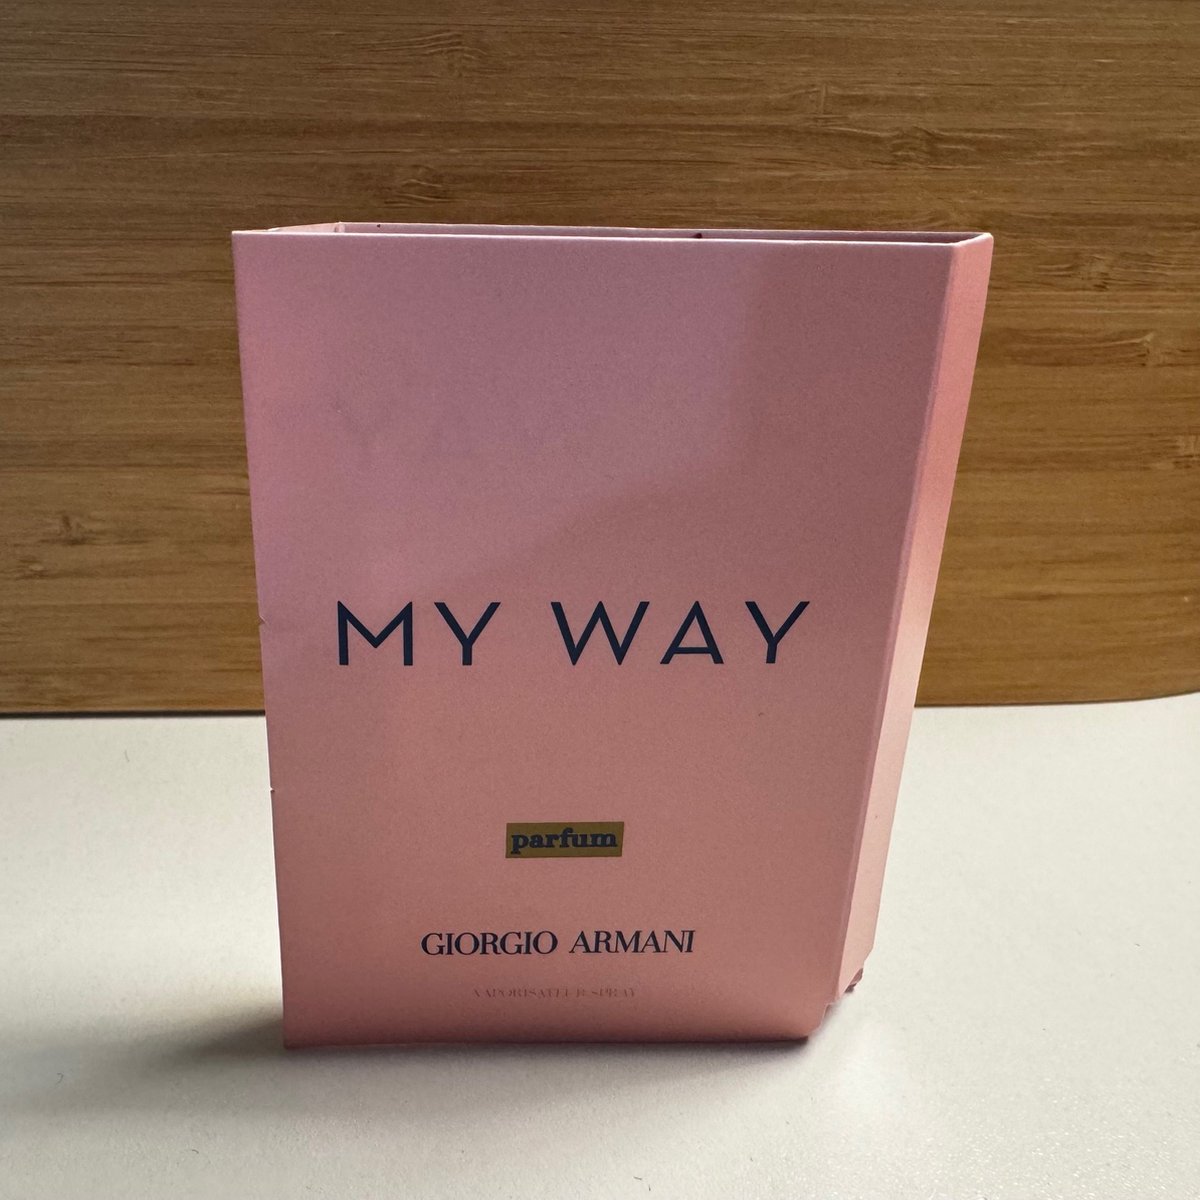 Giorgio Armani - My Way Parfum - 1,2ml Parfum Original Sample